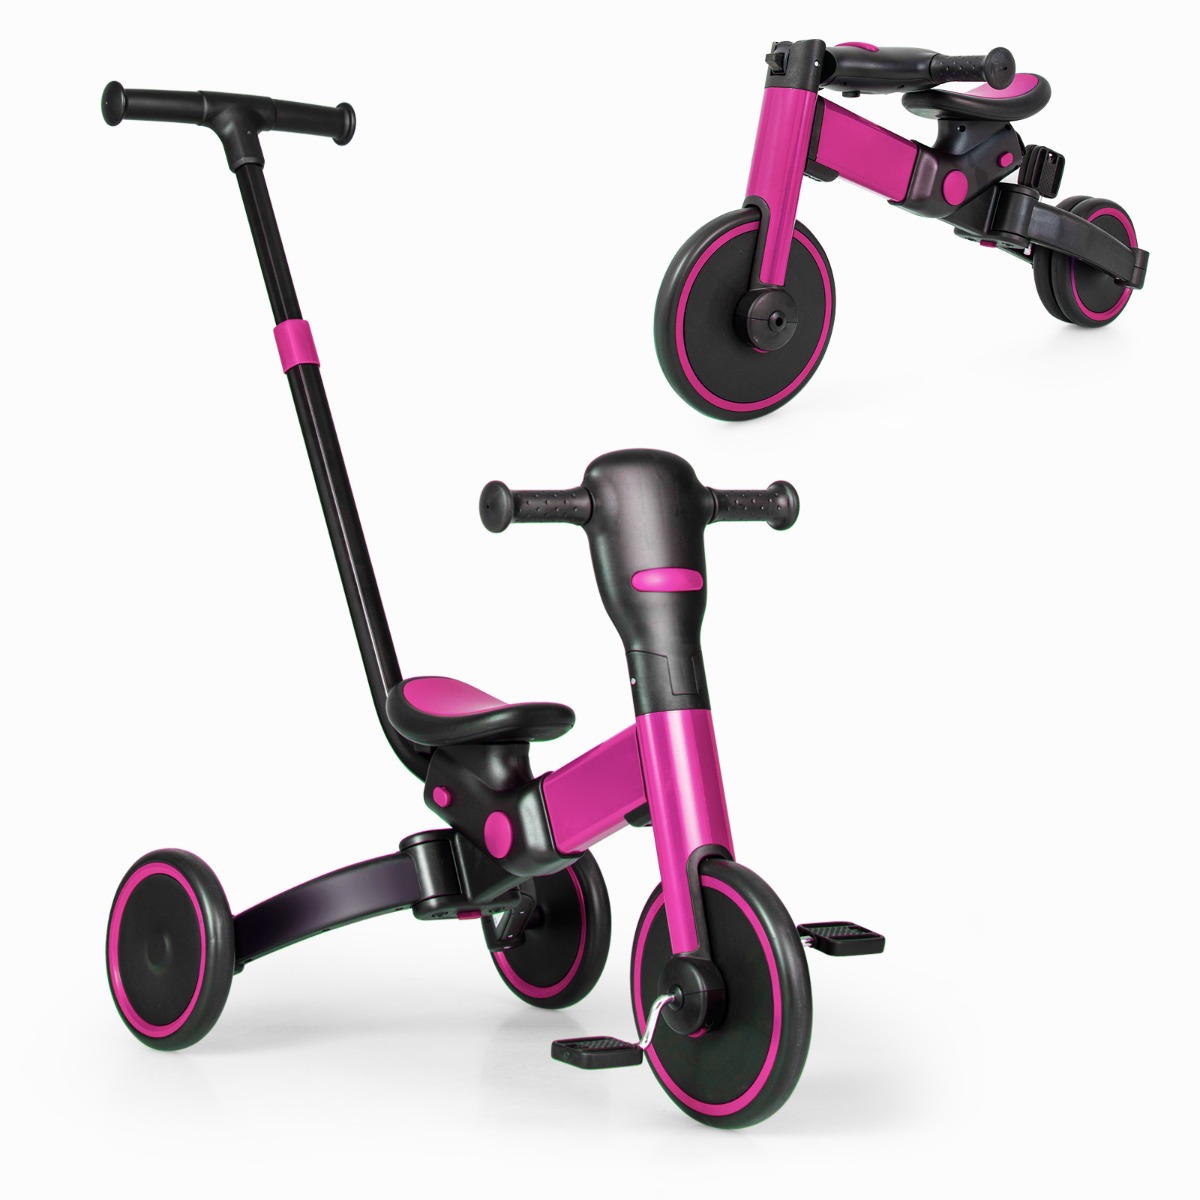 Costway Bicicleta de Equilibrio con Asa de Empuje Ajustable para los Padres y Pedales Desmontables Rosa